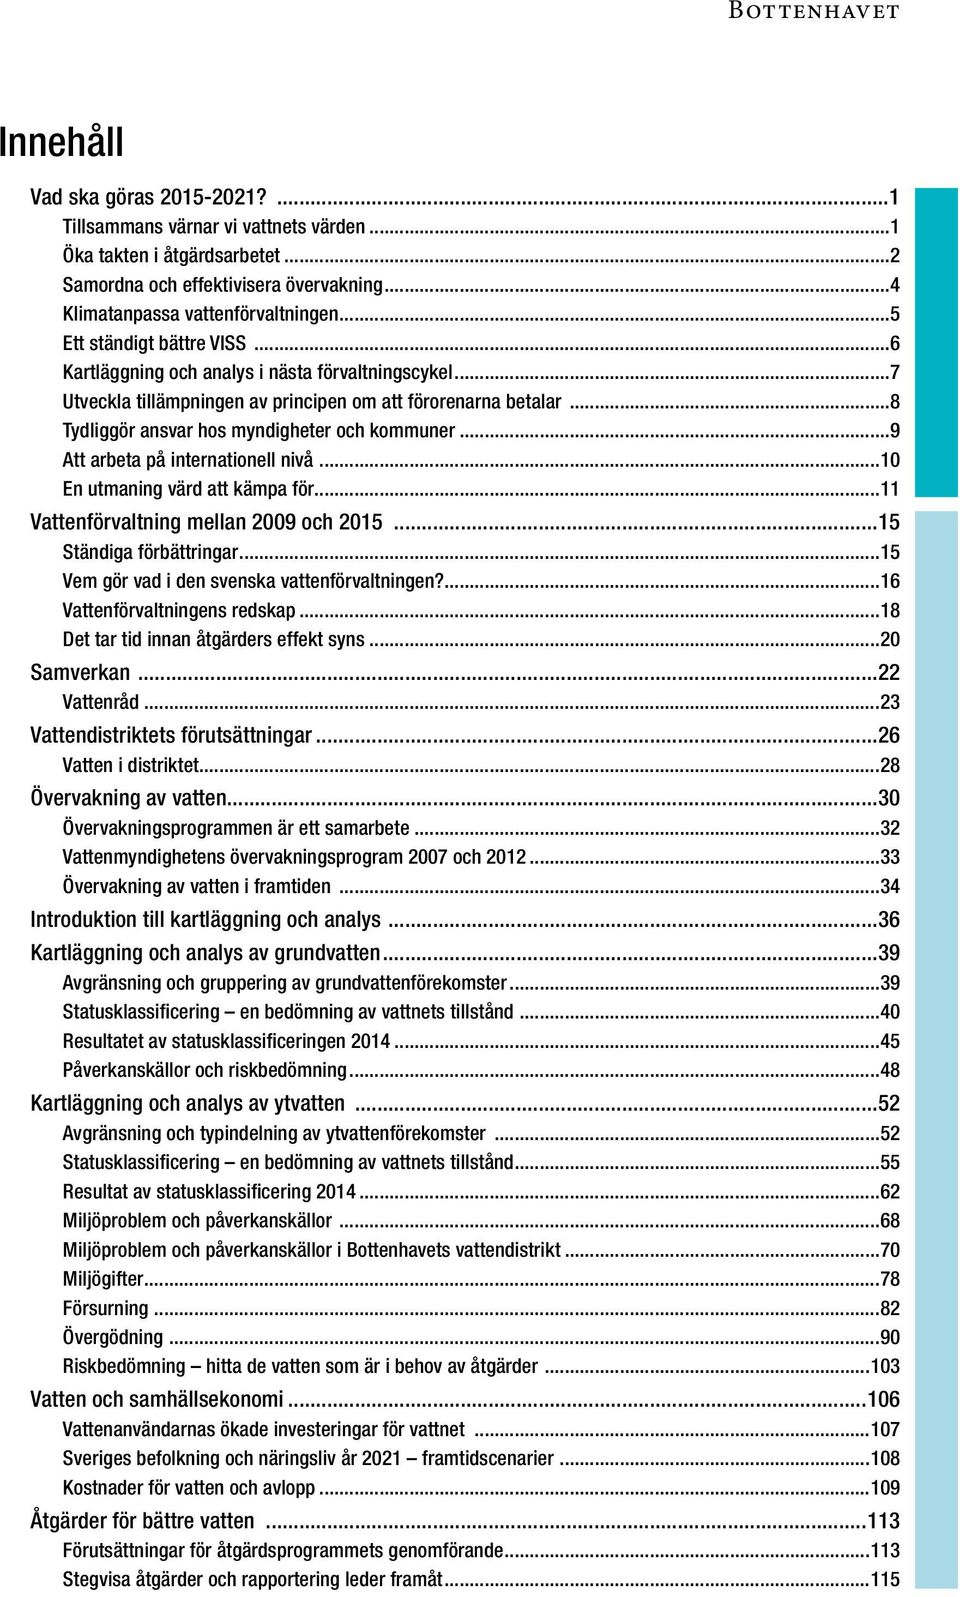 ..9 Att arbeta på internationell nivå...10 En utmaning värd att kämpa för...11 Vattenförvaltning mellan 2009 och 2015...15 Ständiga förbättringar...15 Vem gör vad i den svenska vattenförvaltningen?